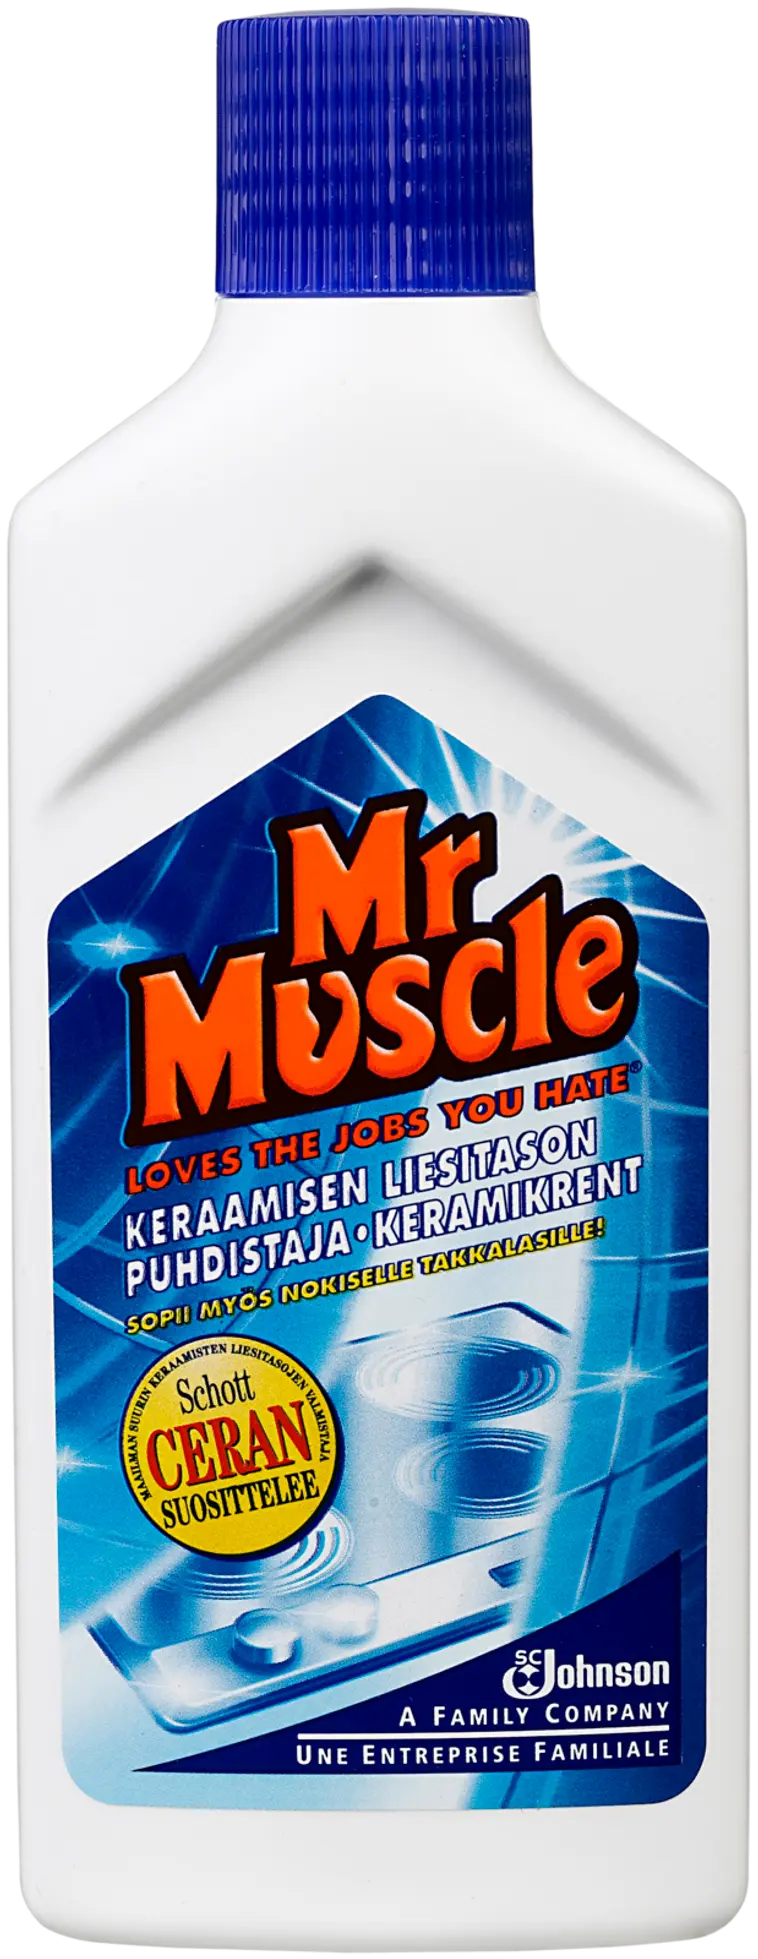 Mr Muscle 150ml keraamisen liesitason puhdistaja